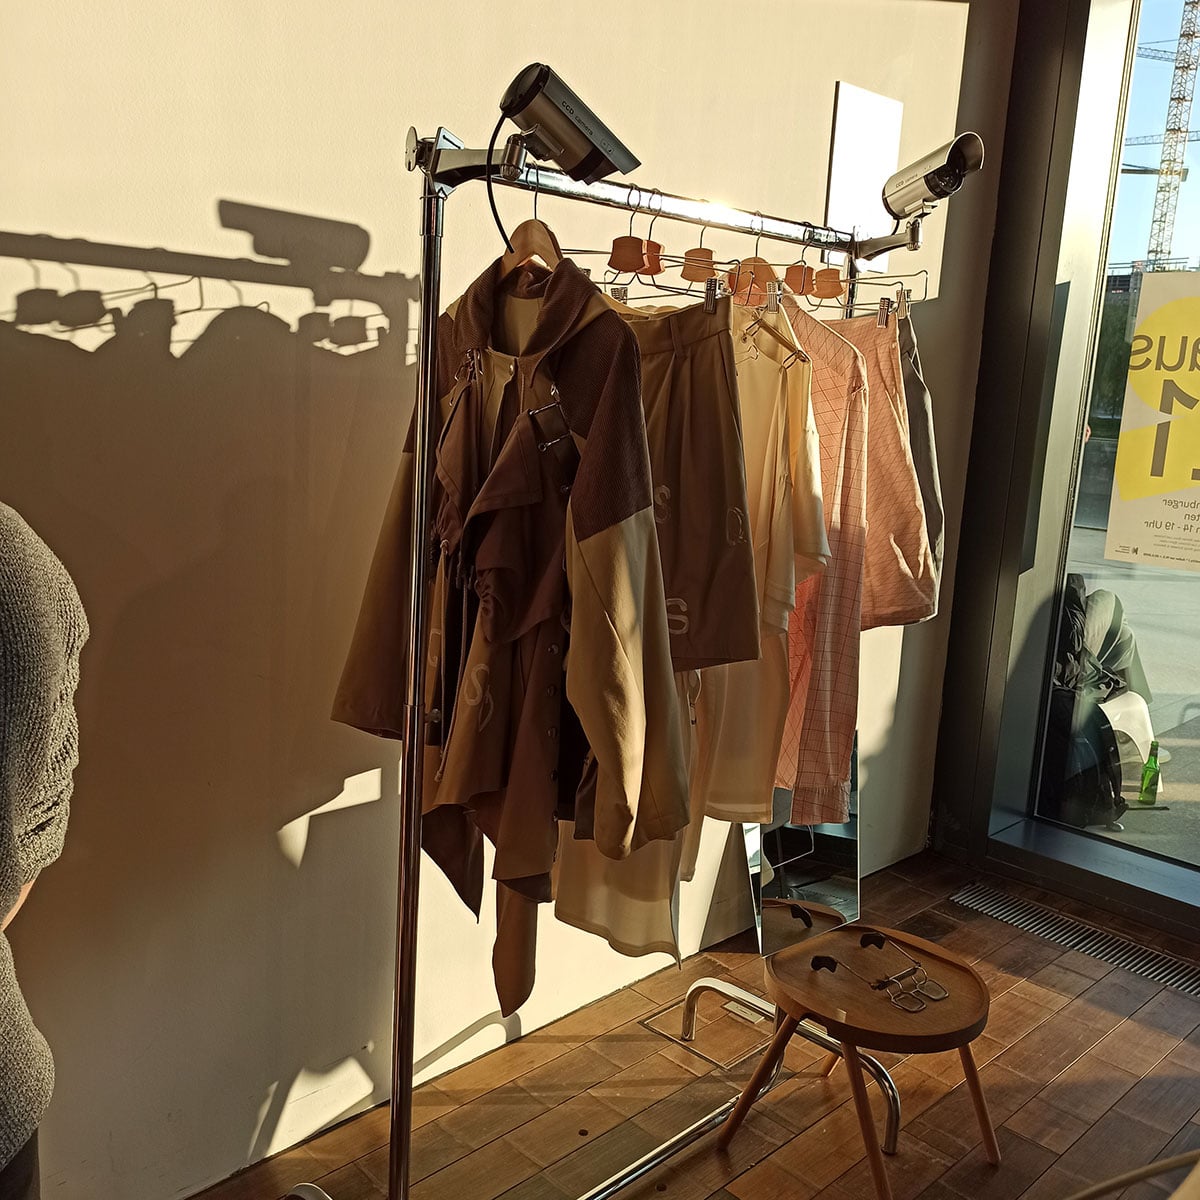 An einer Kleiderstange hängen mehrere Modedesigns in der Sonne